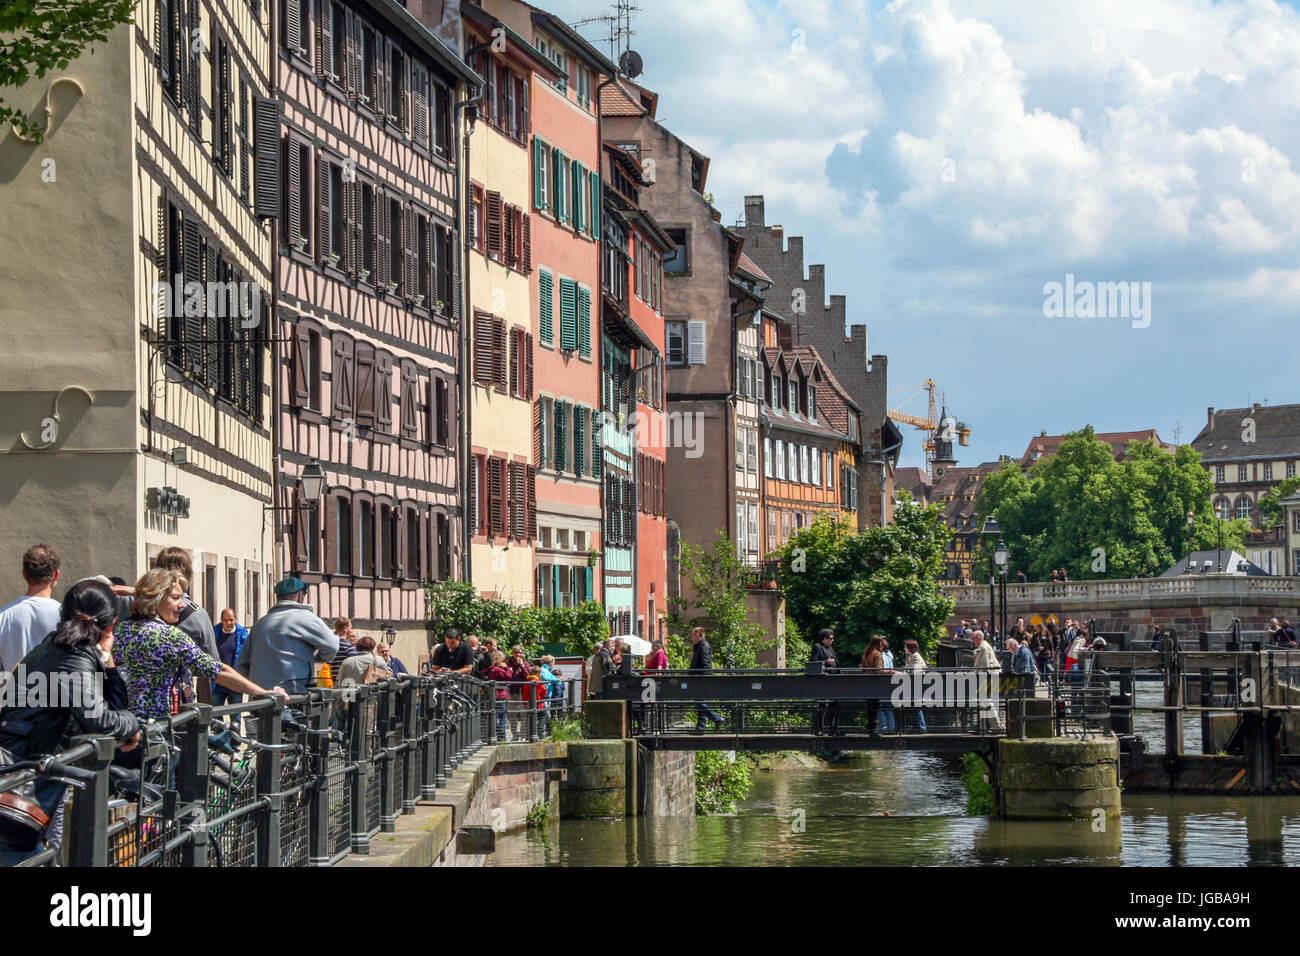 Quartier de la Petite France, Strasbourg, France - Petite France neighbourhood, Strasburg, France Stock Photo